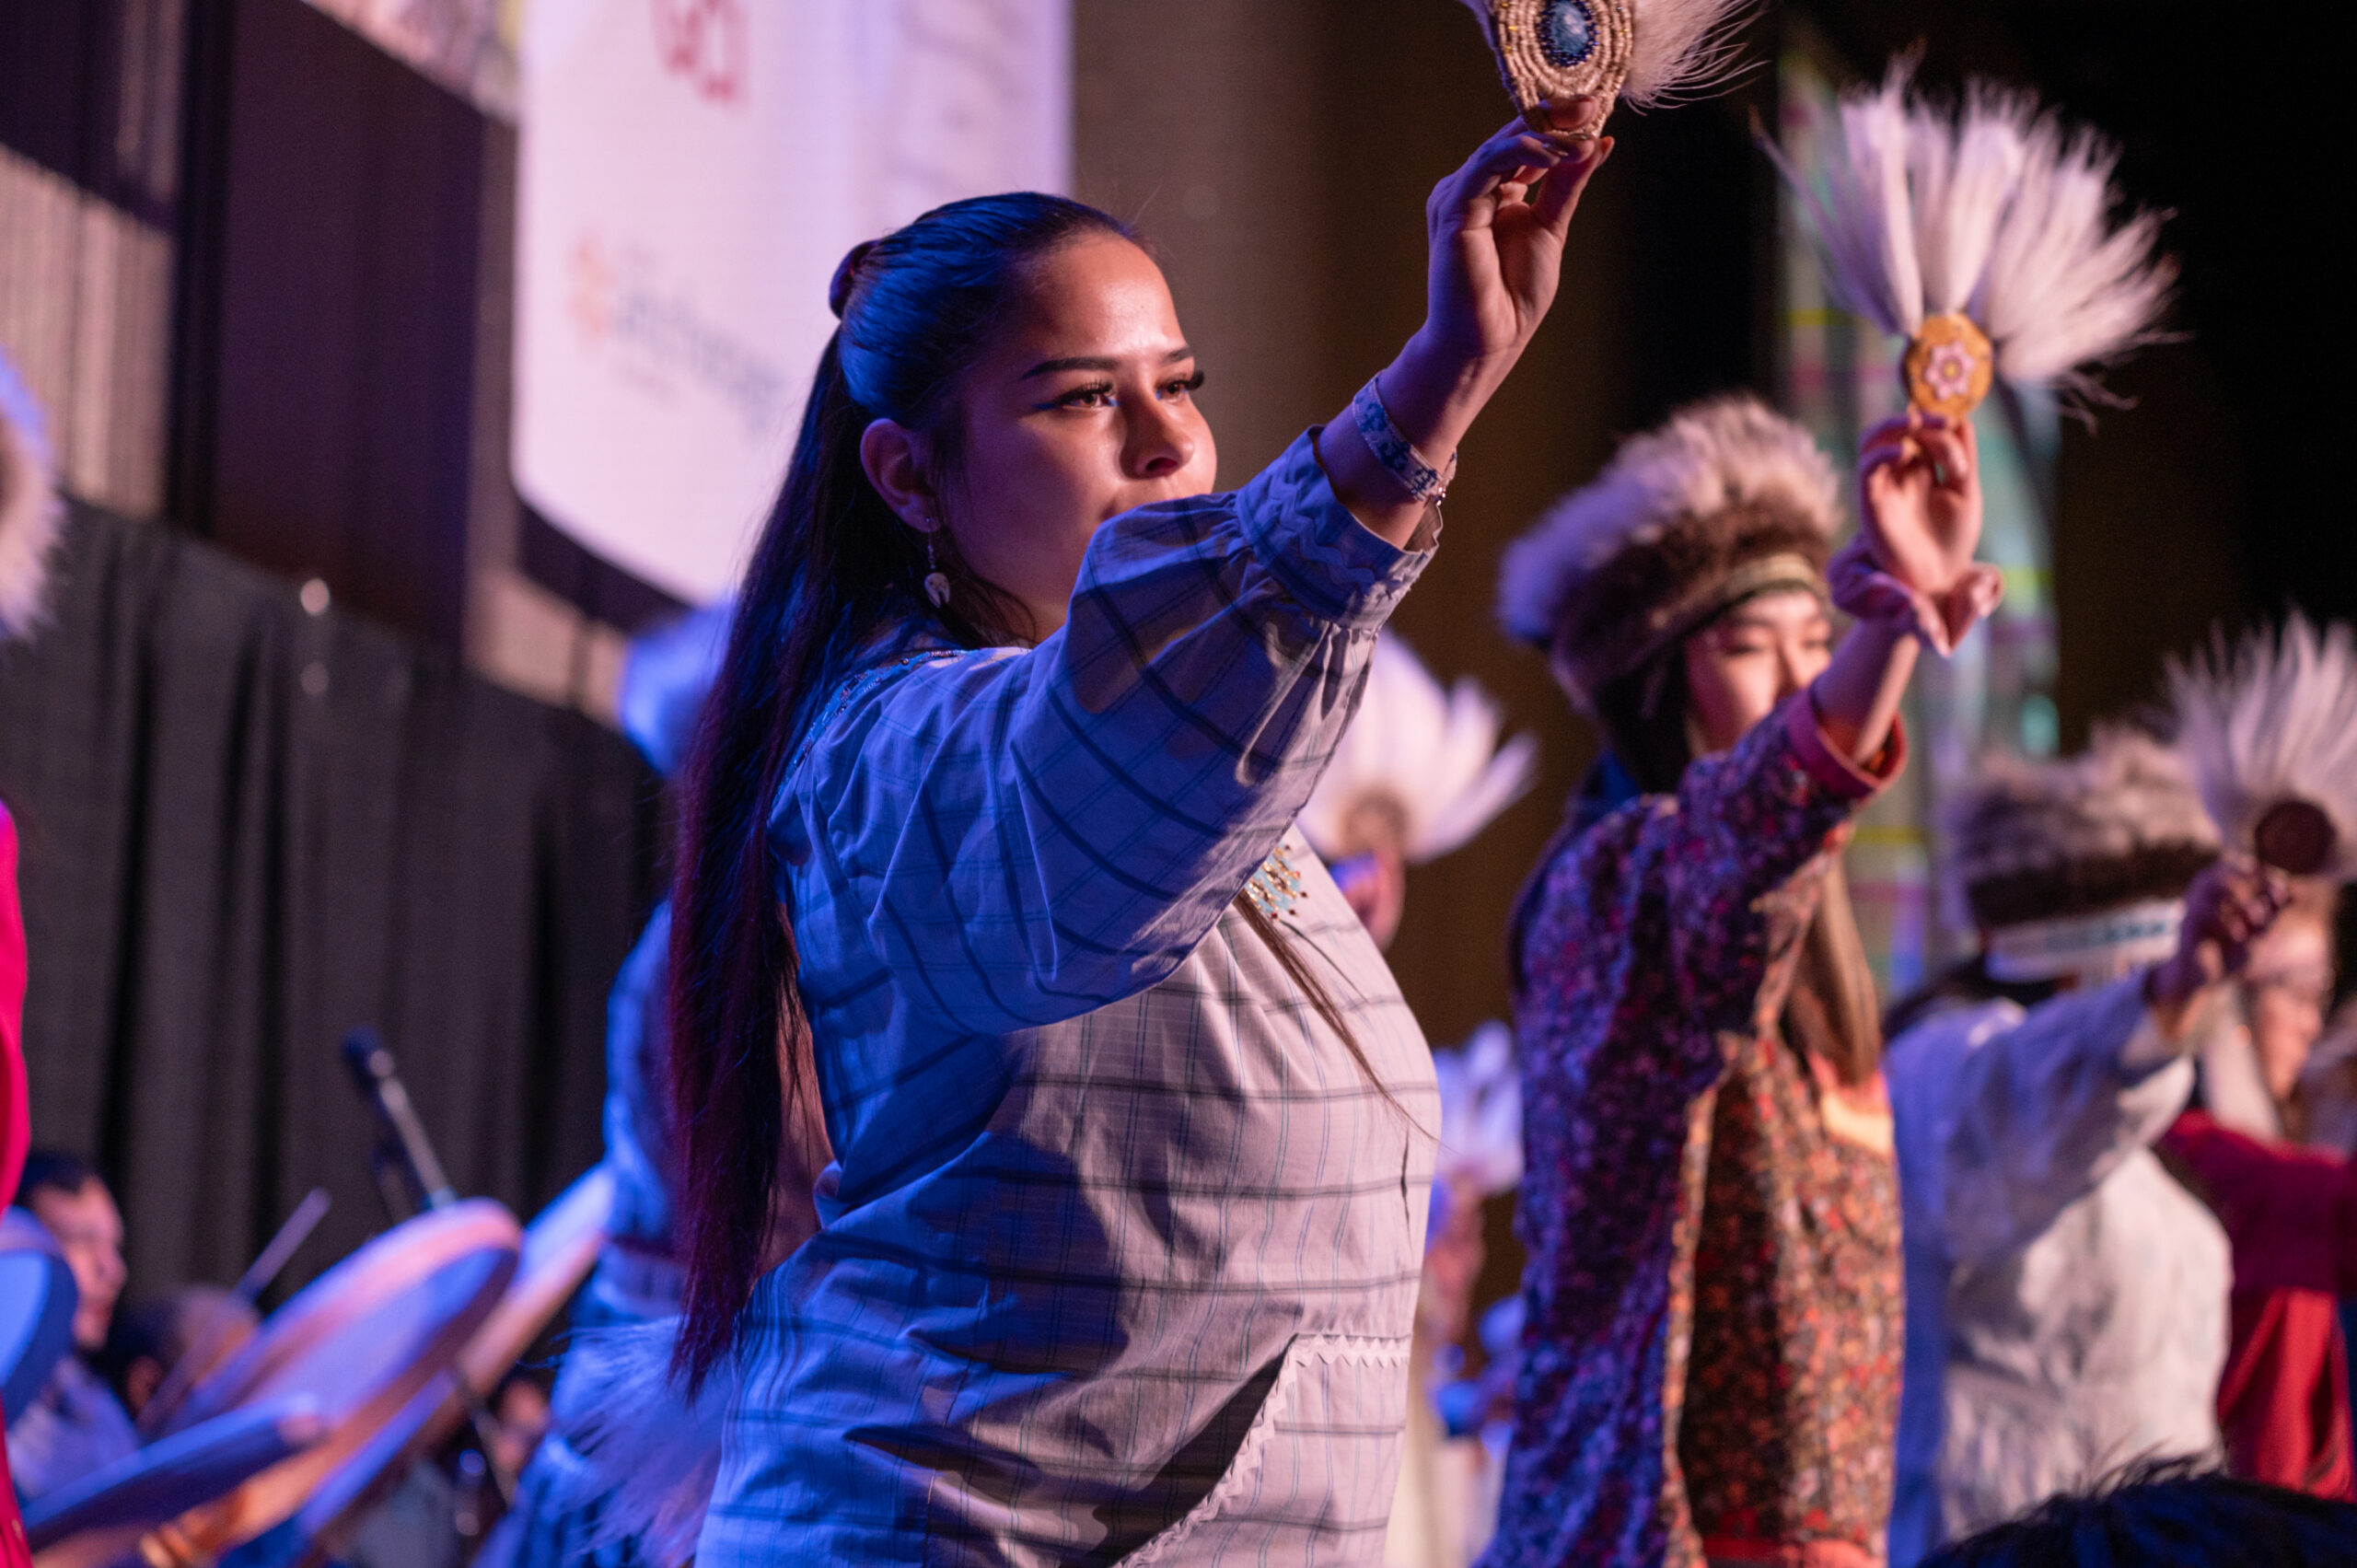 A woman in a kuskpuk waves a native fan in dance.